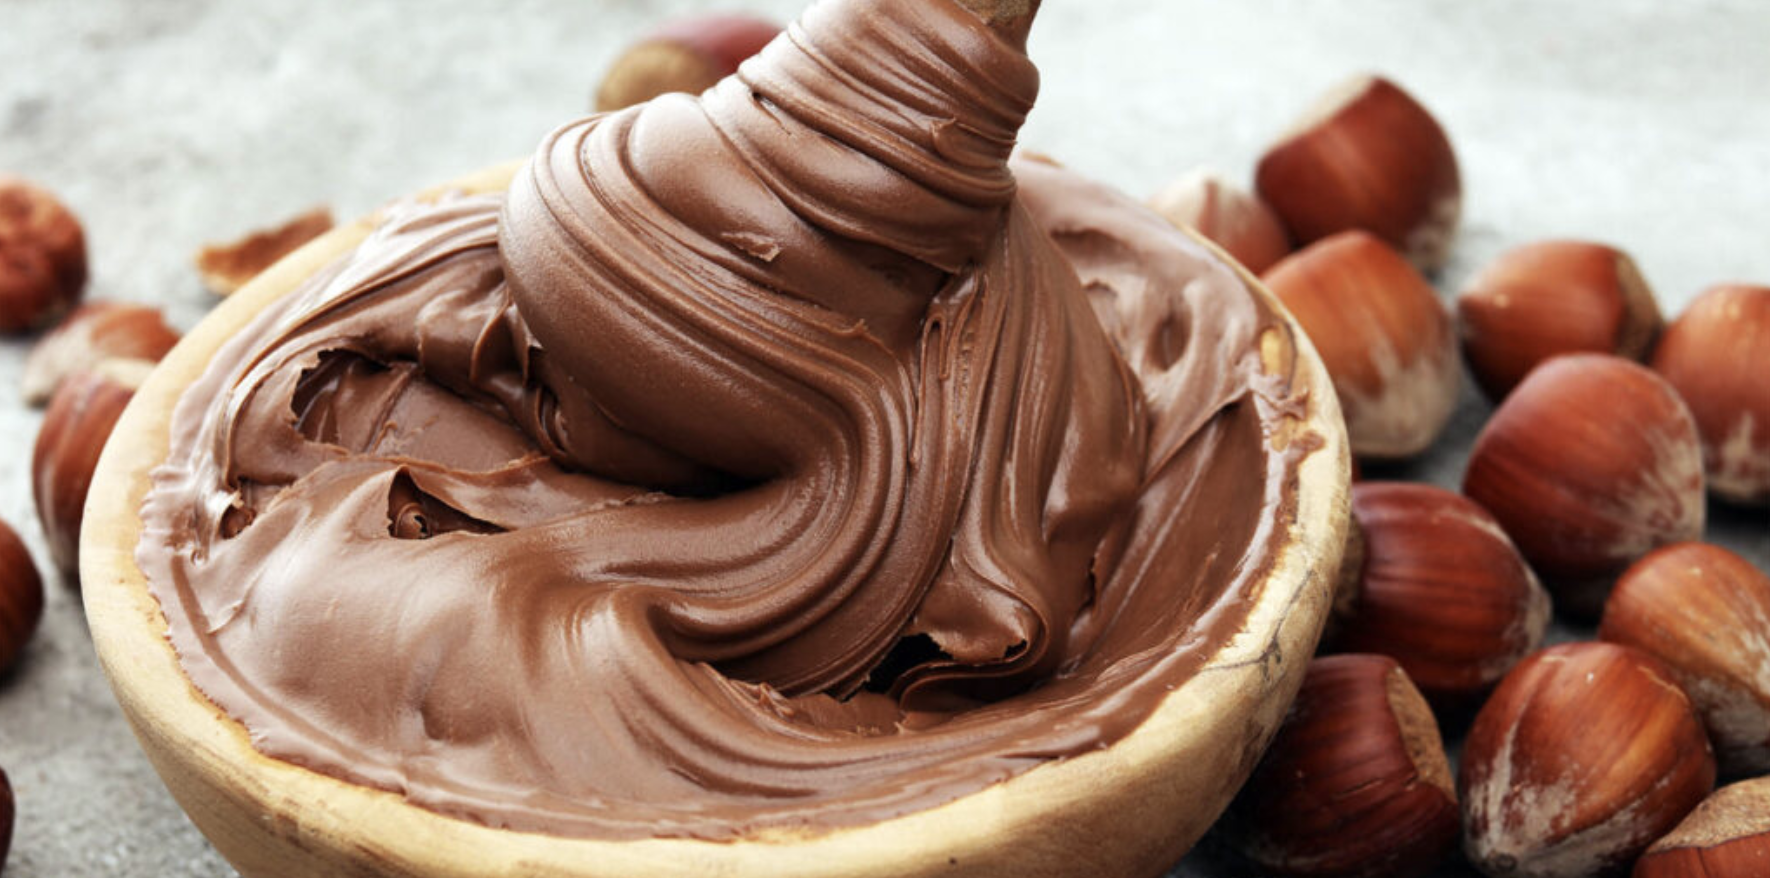 nutella-leger-meilleur-que-loriginal-et-super-dietetique-il-ne-contient-que-200-calories